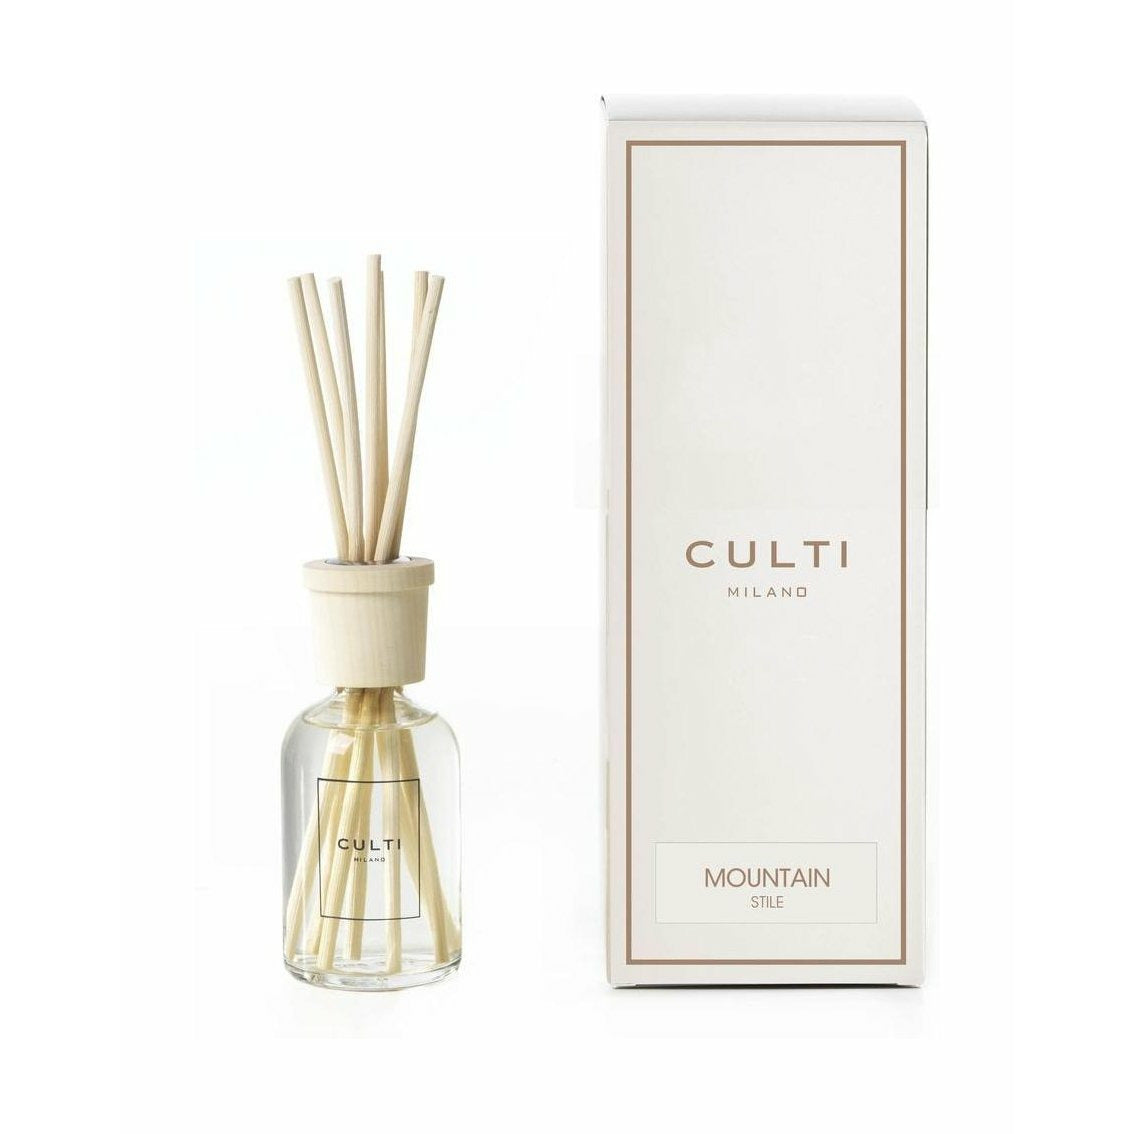 Culti Milano Stile Classic Fragrance Diffuser Mountain, 100 Ml